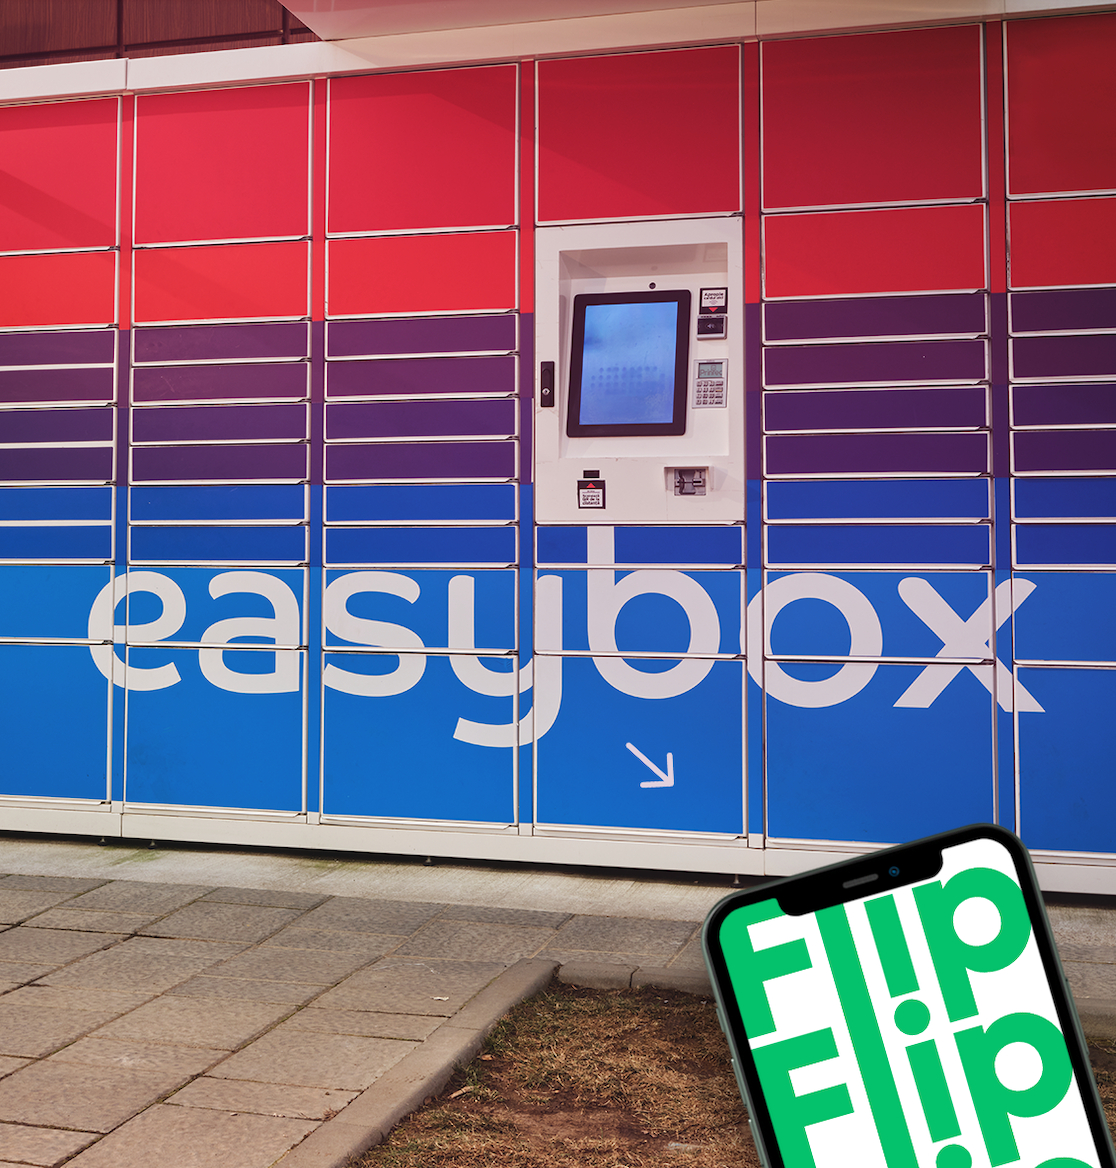 Telefoanele recondiționate de pe Flip.ro, livrate gratuit în easybox-urile Sameday